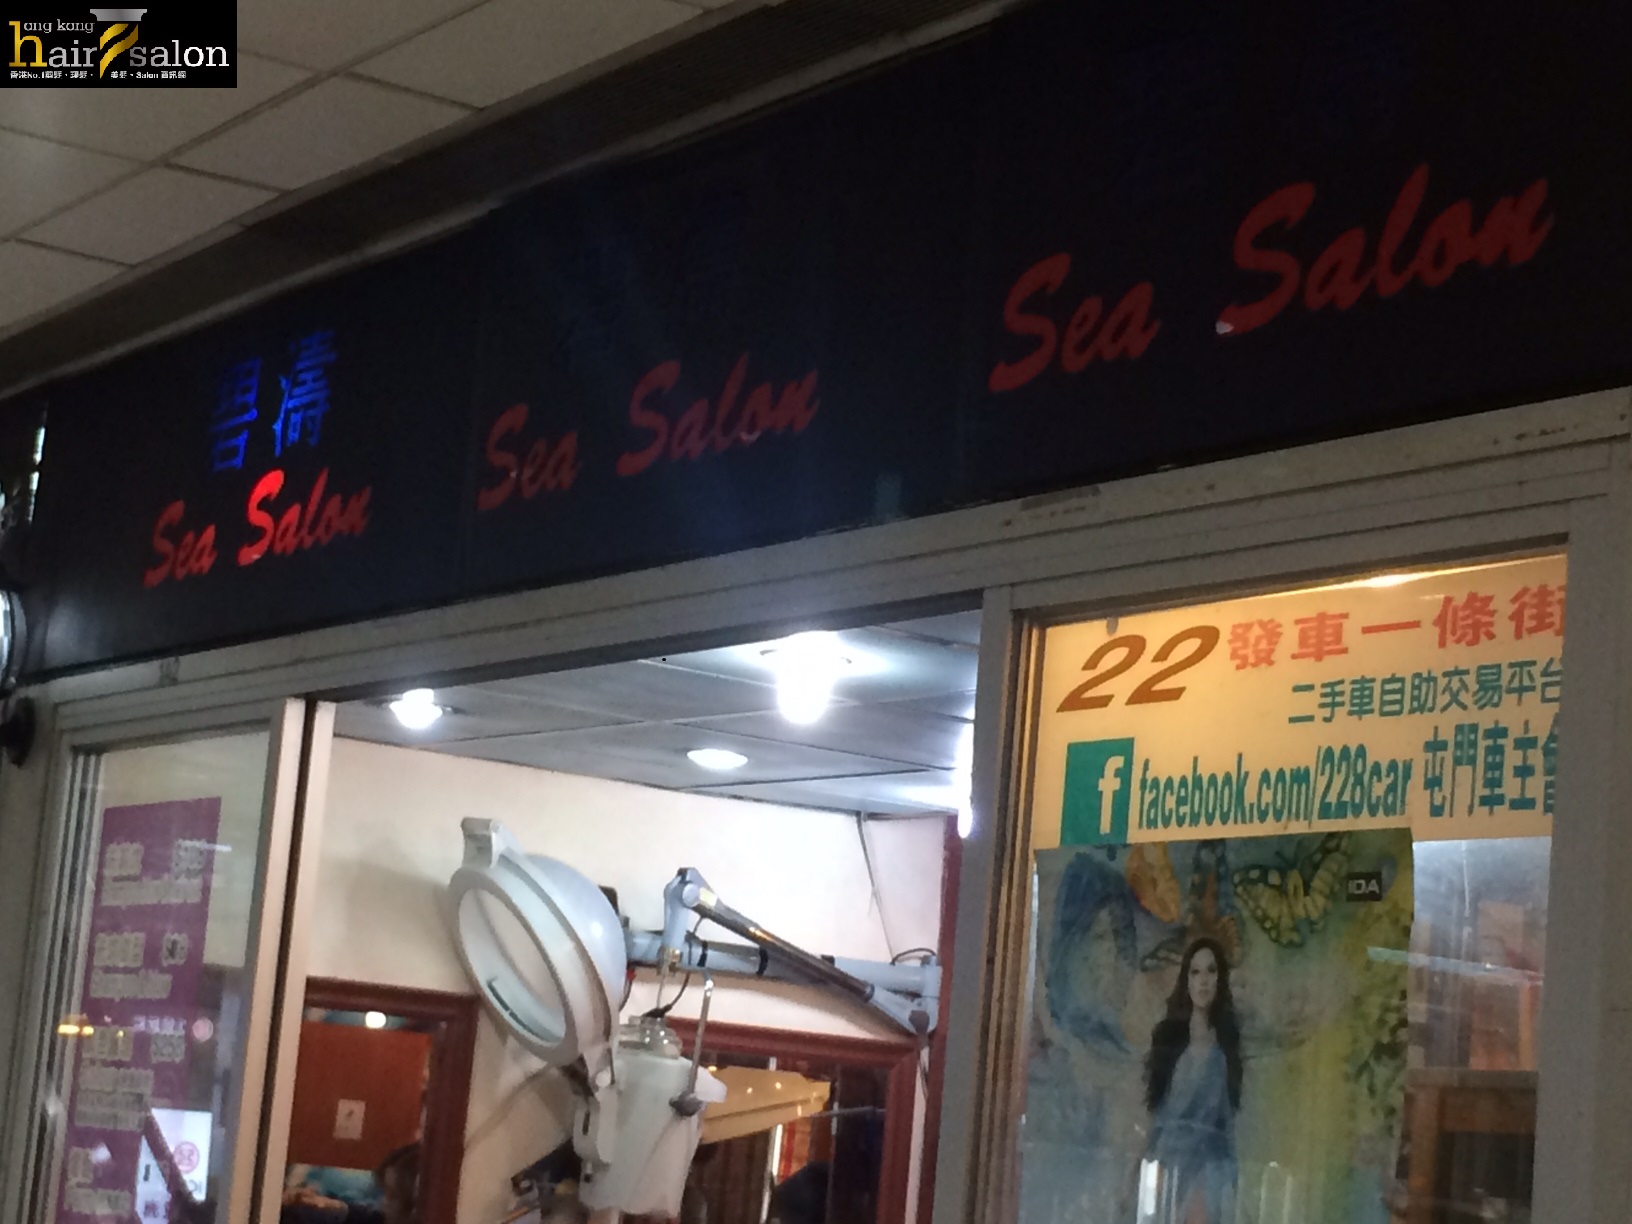 髮型屋: 碧濤 Sea Salon